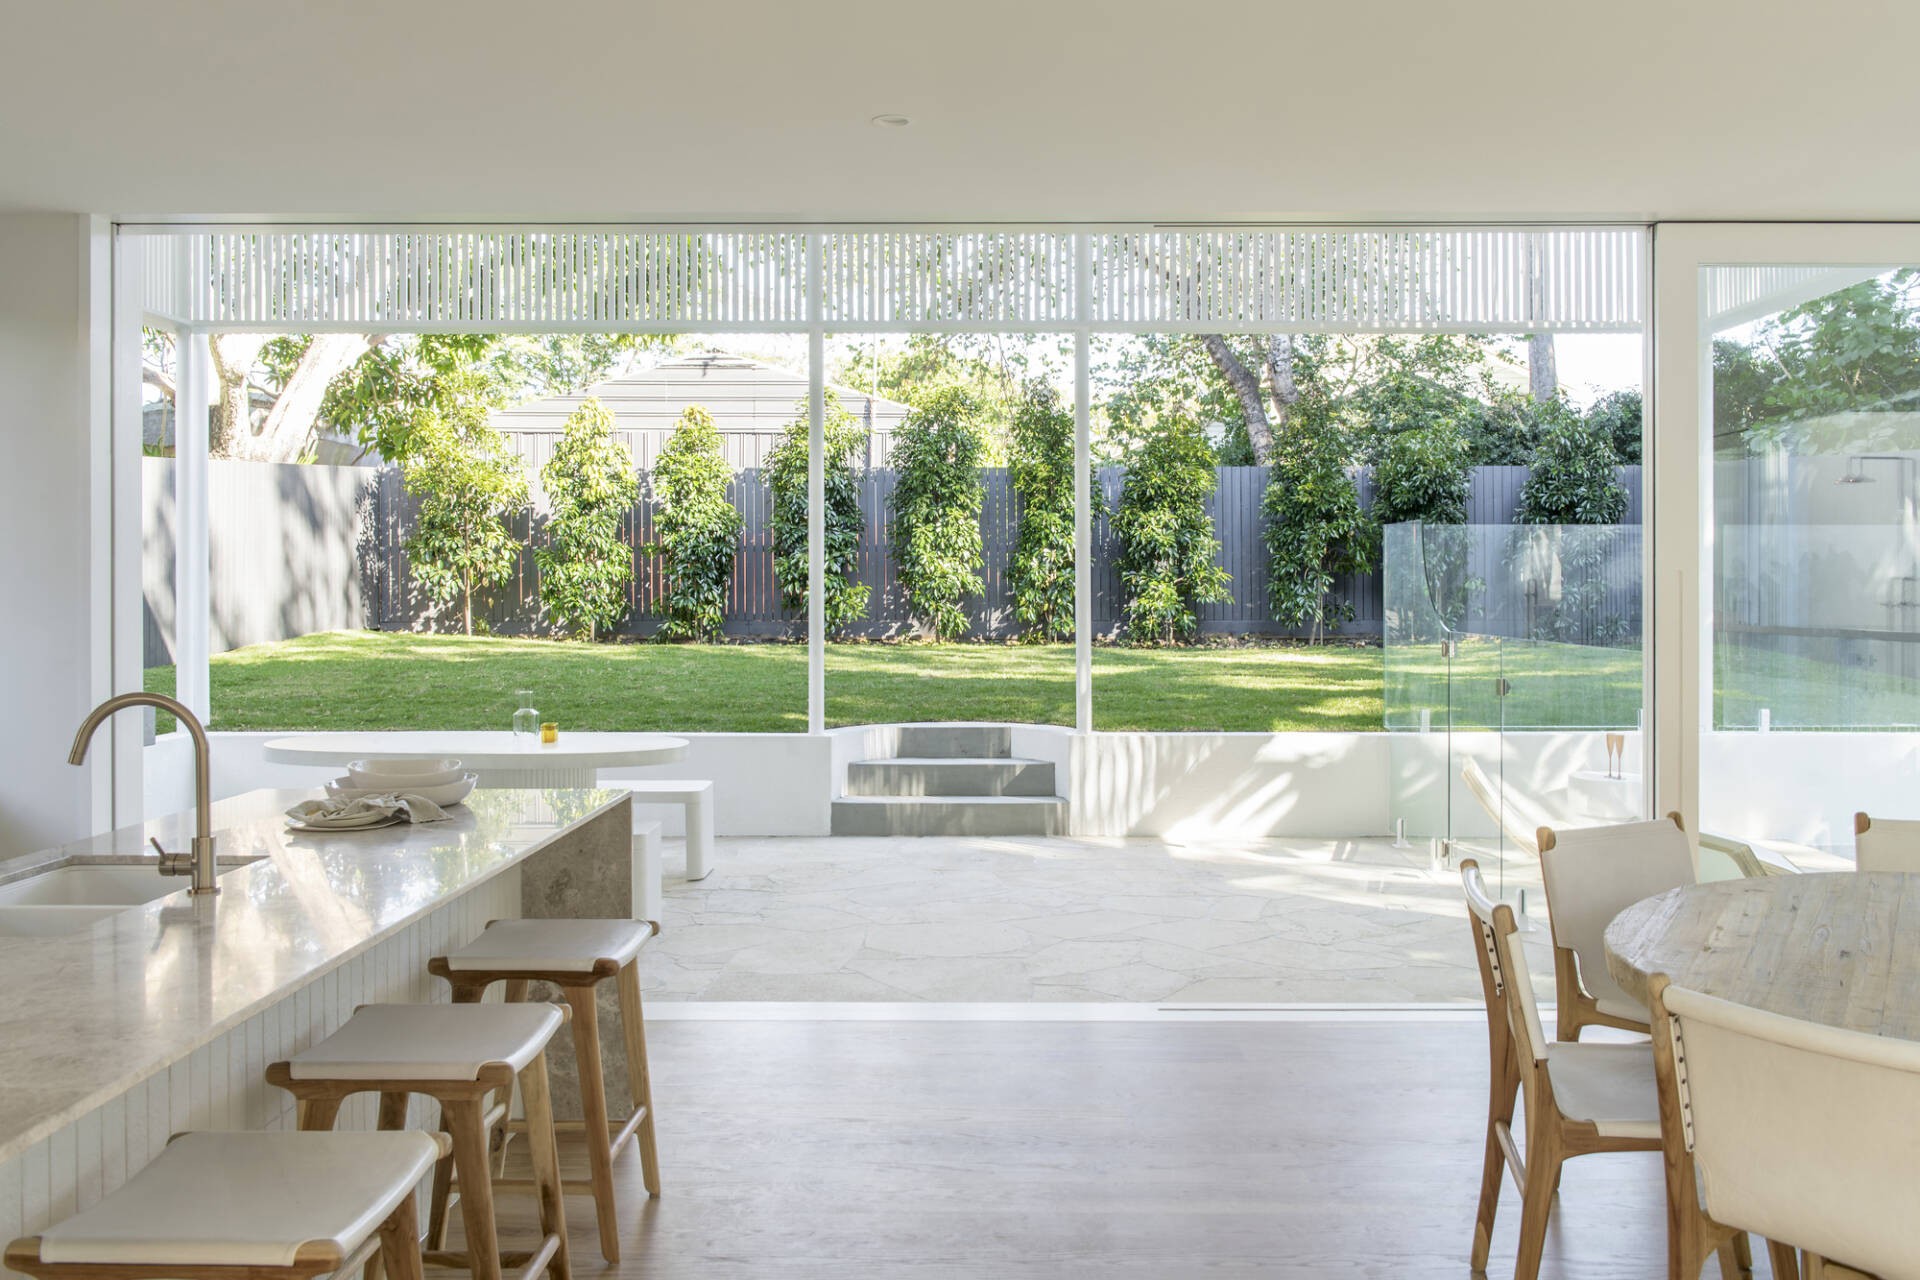 
Khu vực bếp và khu vực ăn uống mở ra không gian sân vườn ấn tượng, nhờ hệ cửa kính mà căn nhà góc nào cũng đẹp như tranh vẽ
